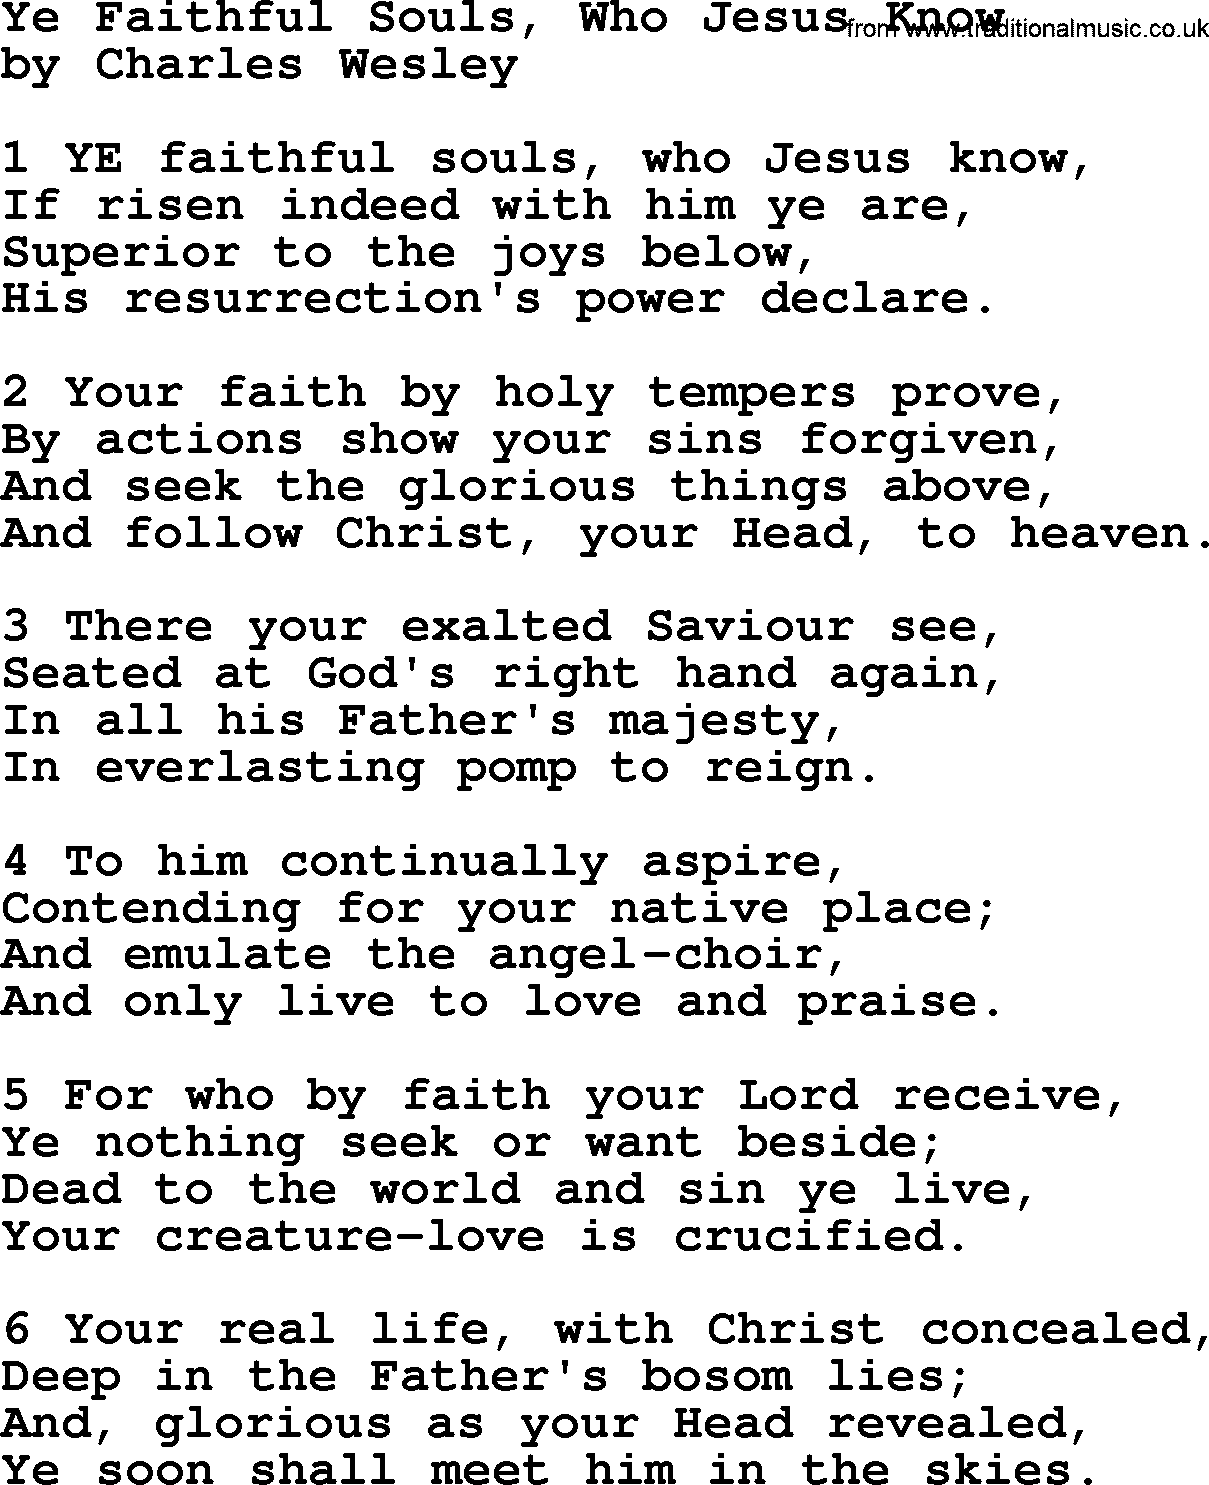 Charles Wesley hymn: Ye Faithful Souls, Who Jesus Know, lyrics